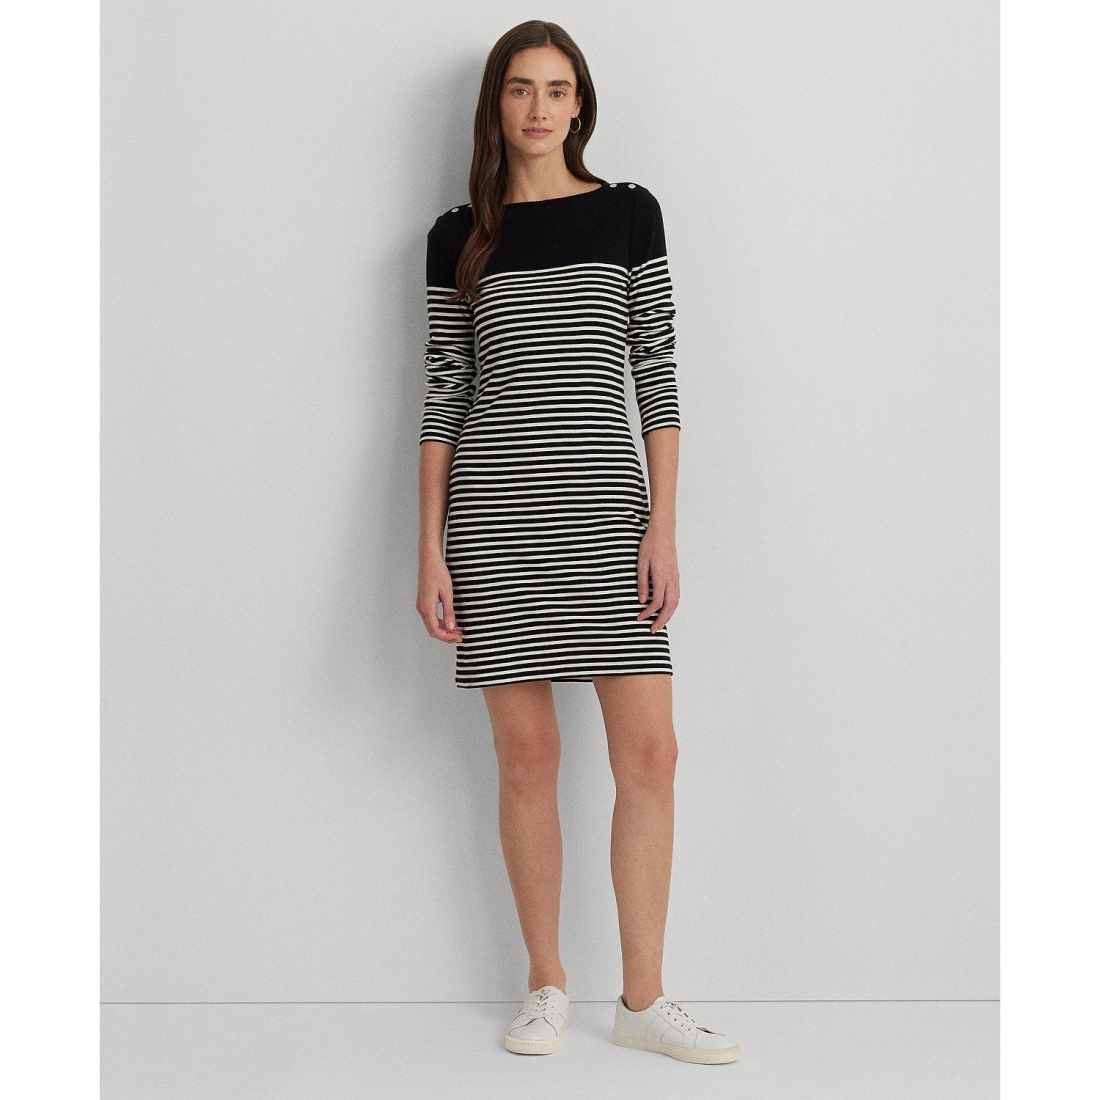 'Striped' 3/4 Arm Kleid für Damen